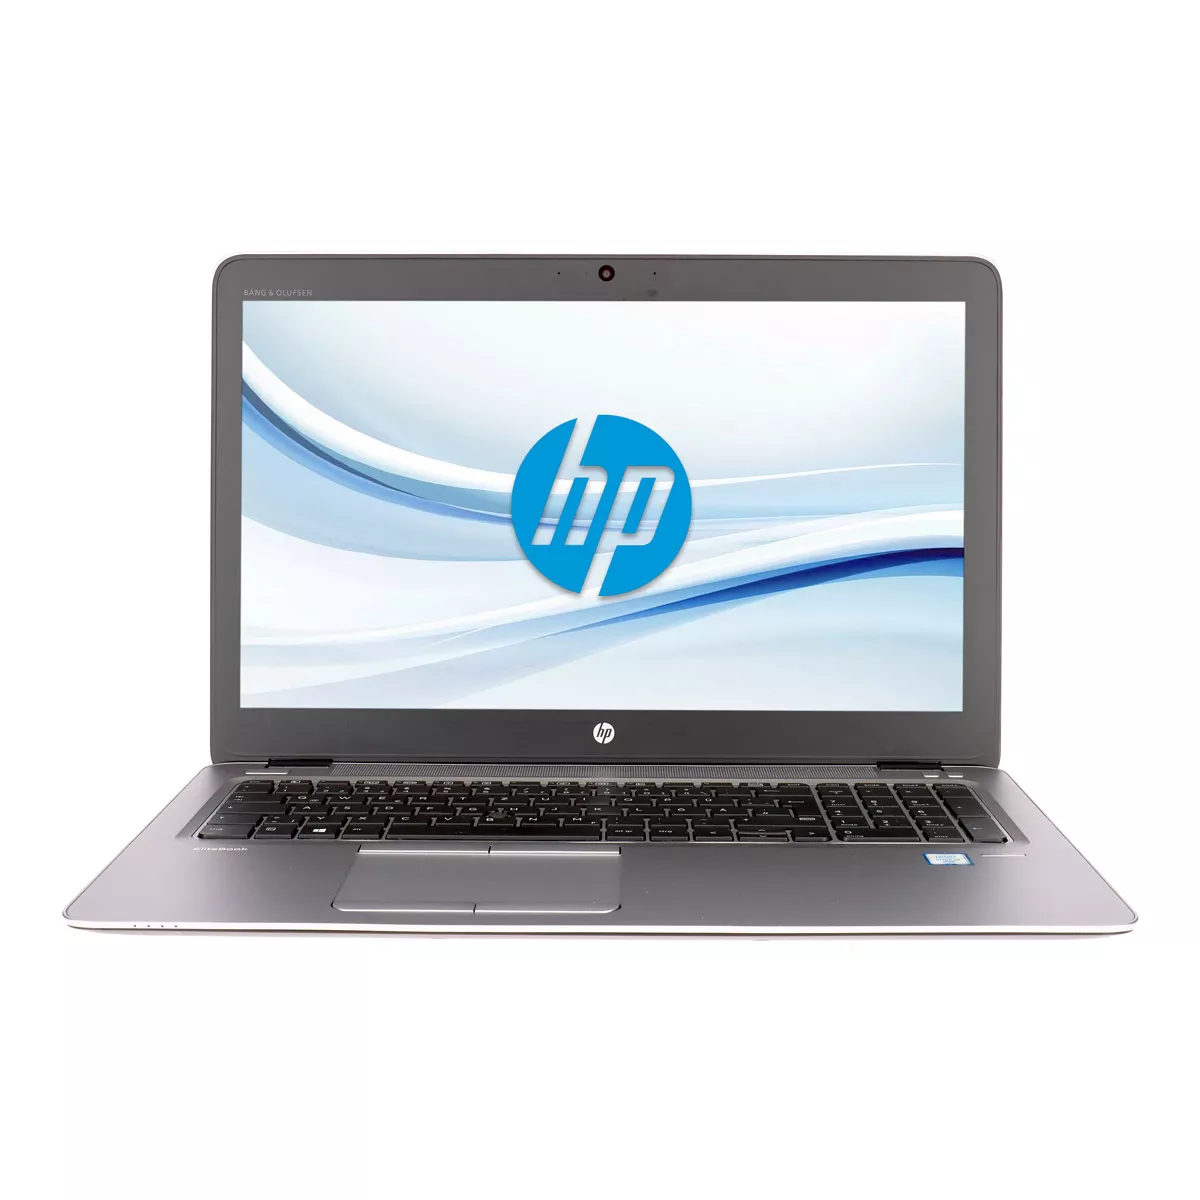 HP EliteBook 850 G3 Core i7 6600U Radeon R7 M265 16 GB 500 GB M.2 SSD Webcam A